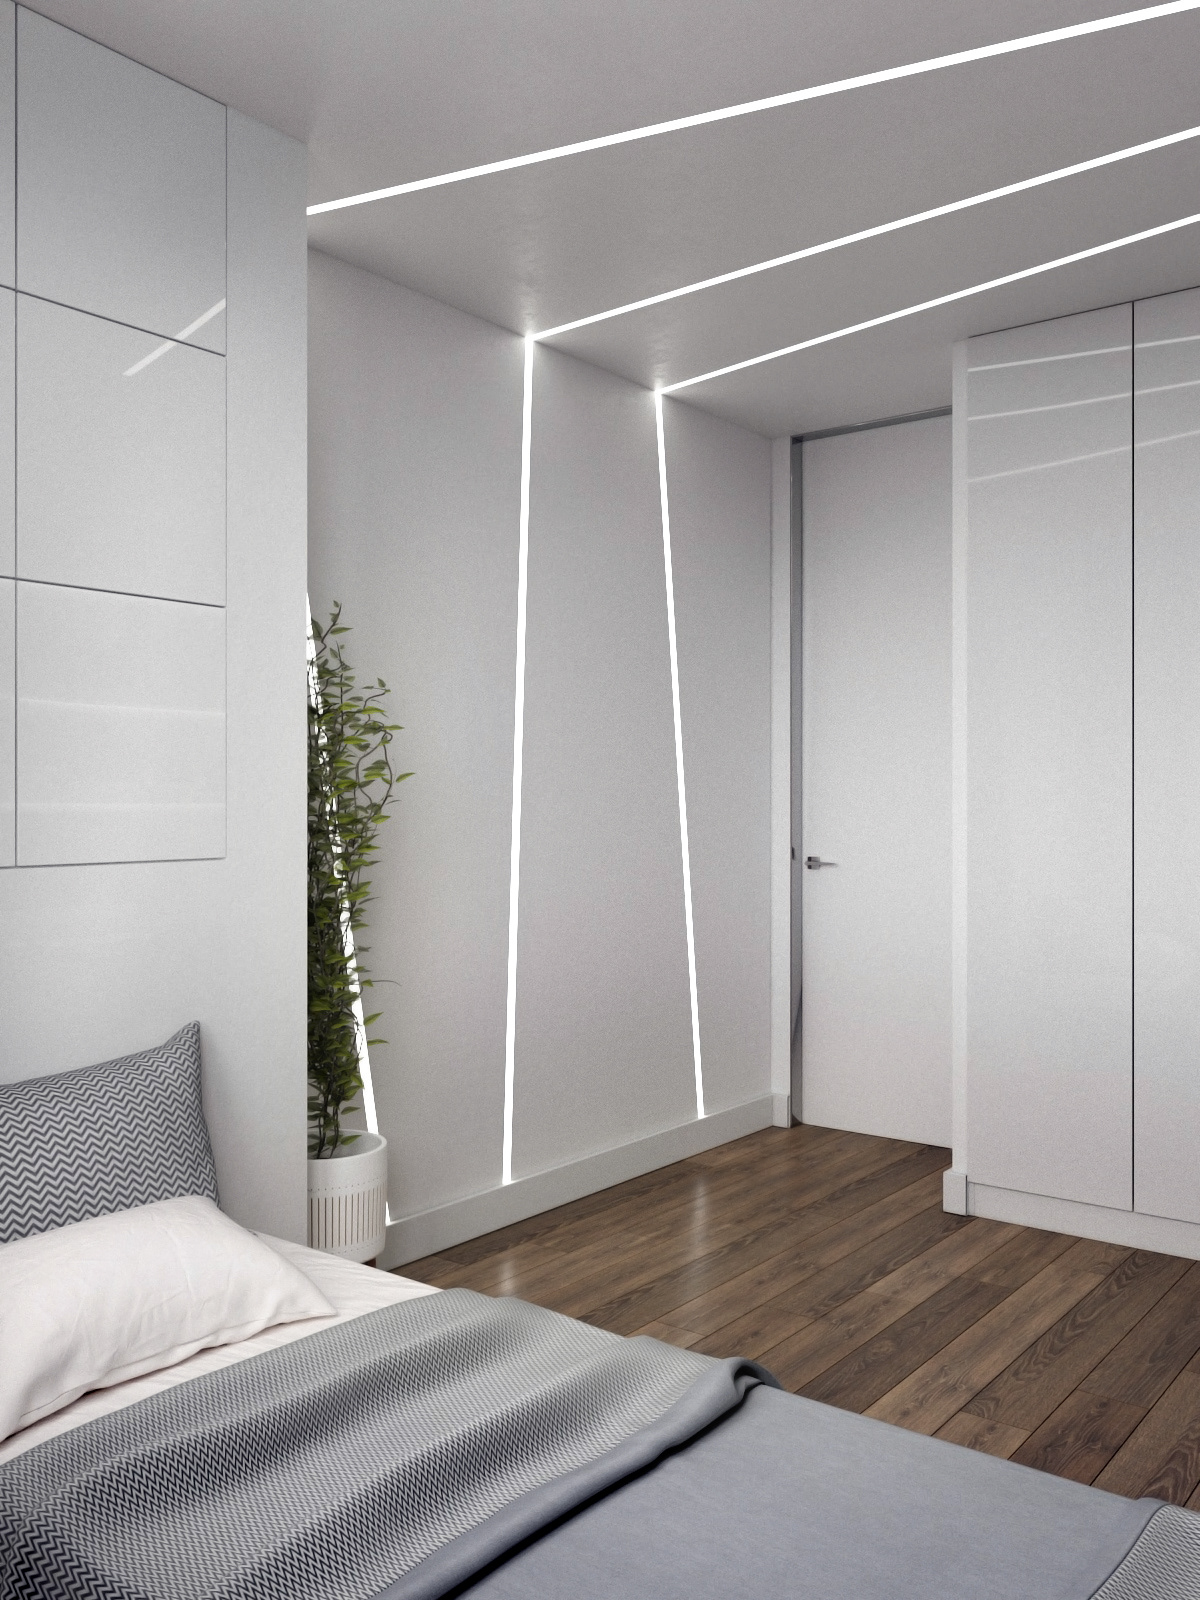 Tia sáng len lỏi vào phòng ngủ, điều hòa không gian sống cho nhà 3 tầng